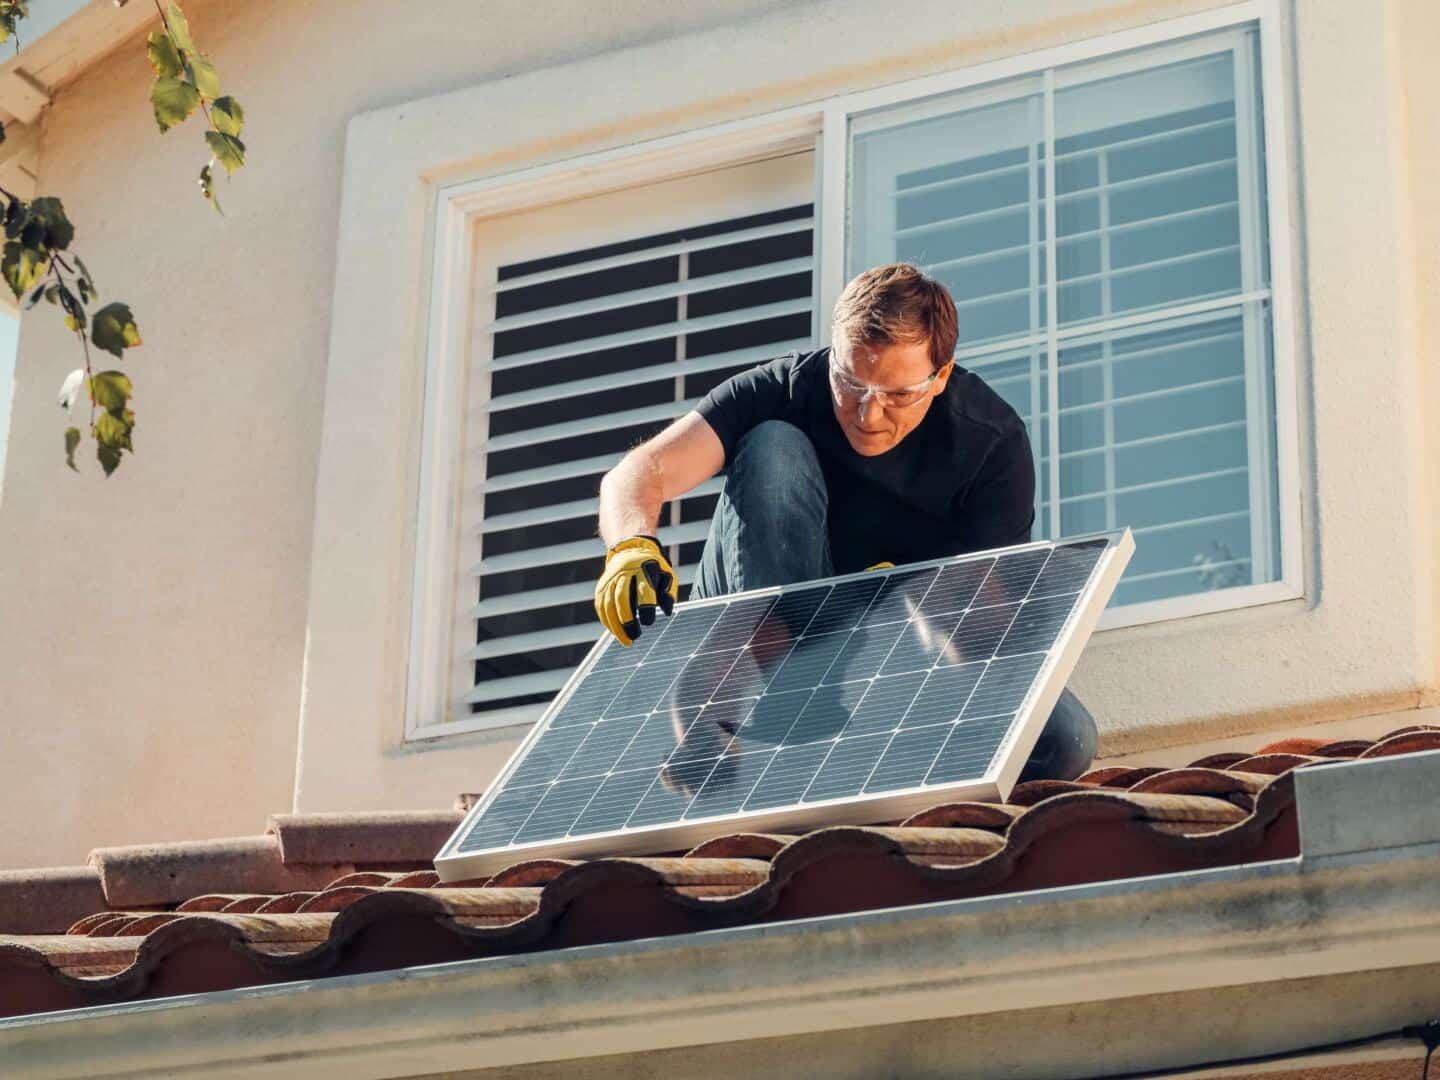 Ein Mann installiert Sonnenkollektoren auf einem Dach, um die Heizkosten zu senken